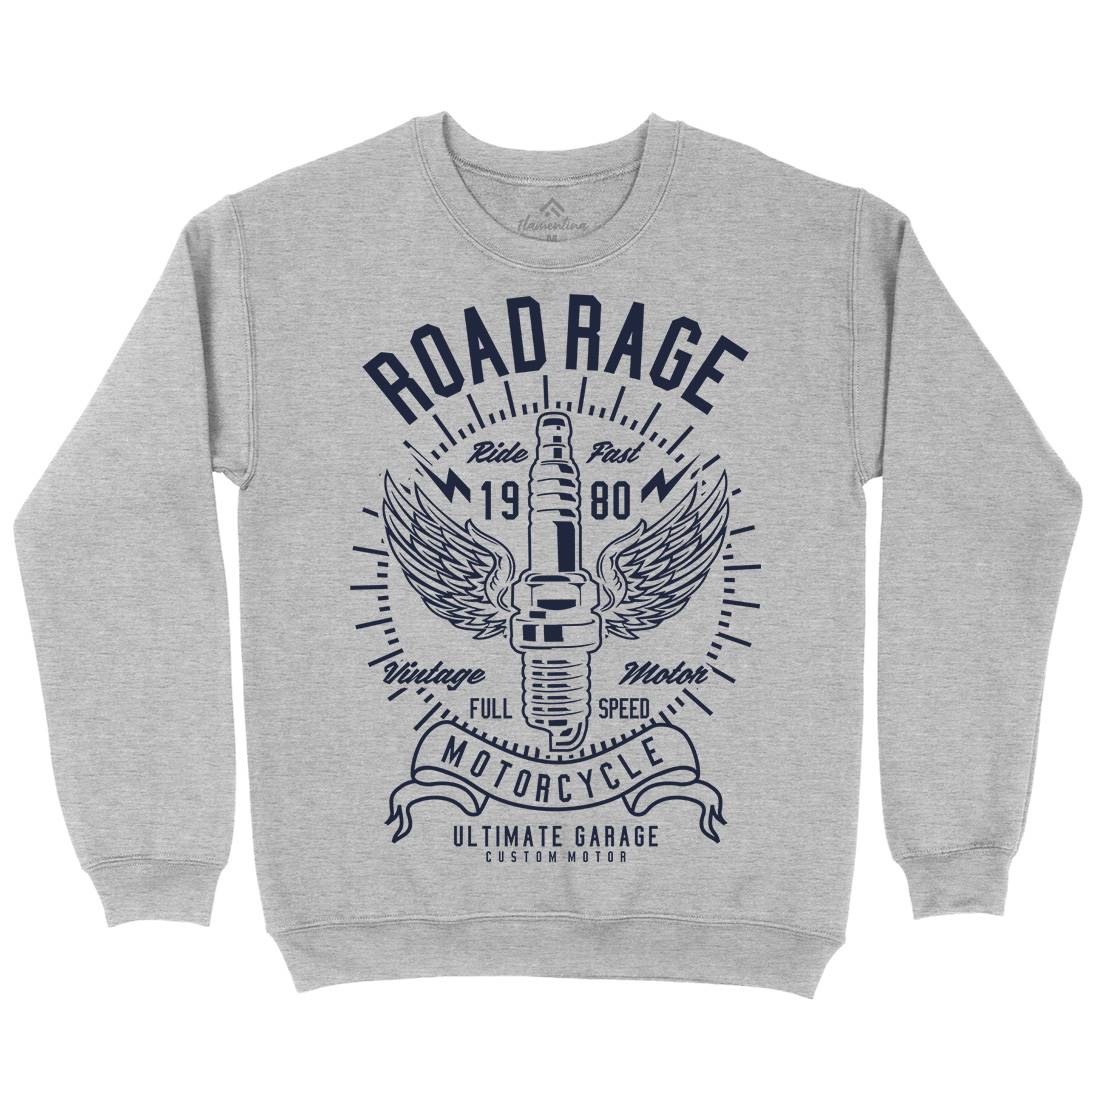 Road Rage Kids Crew Neck Sweatshirt Motorcycles A270